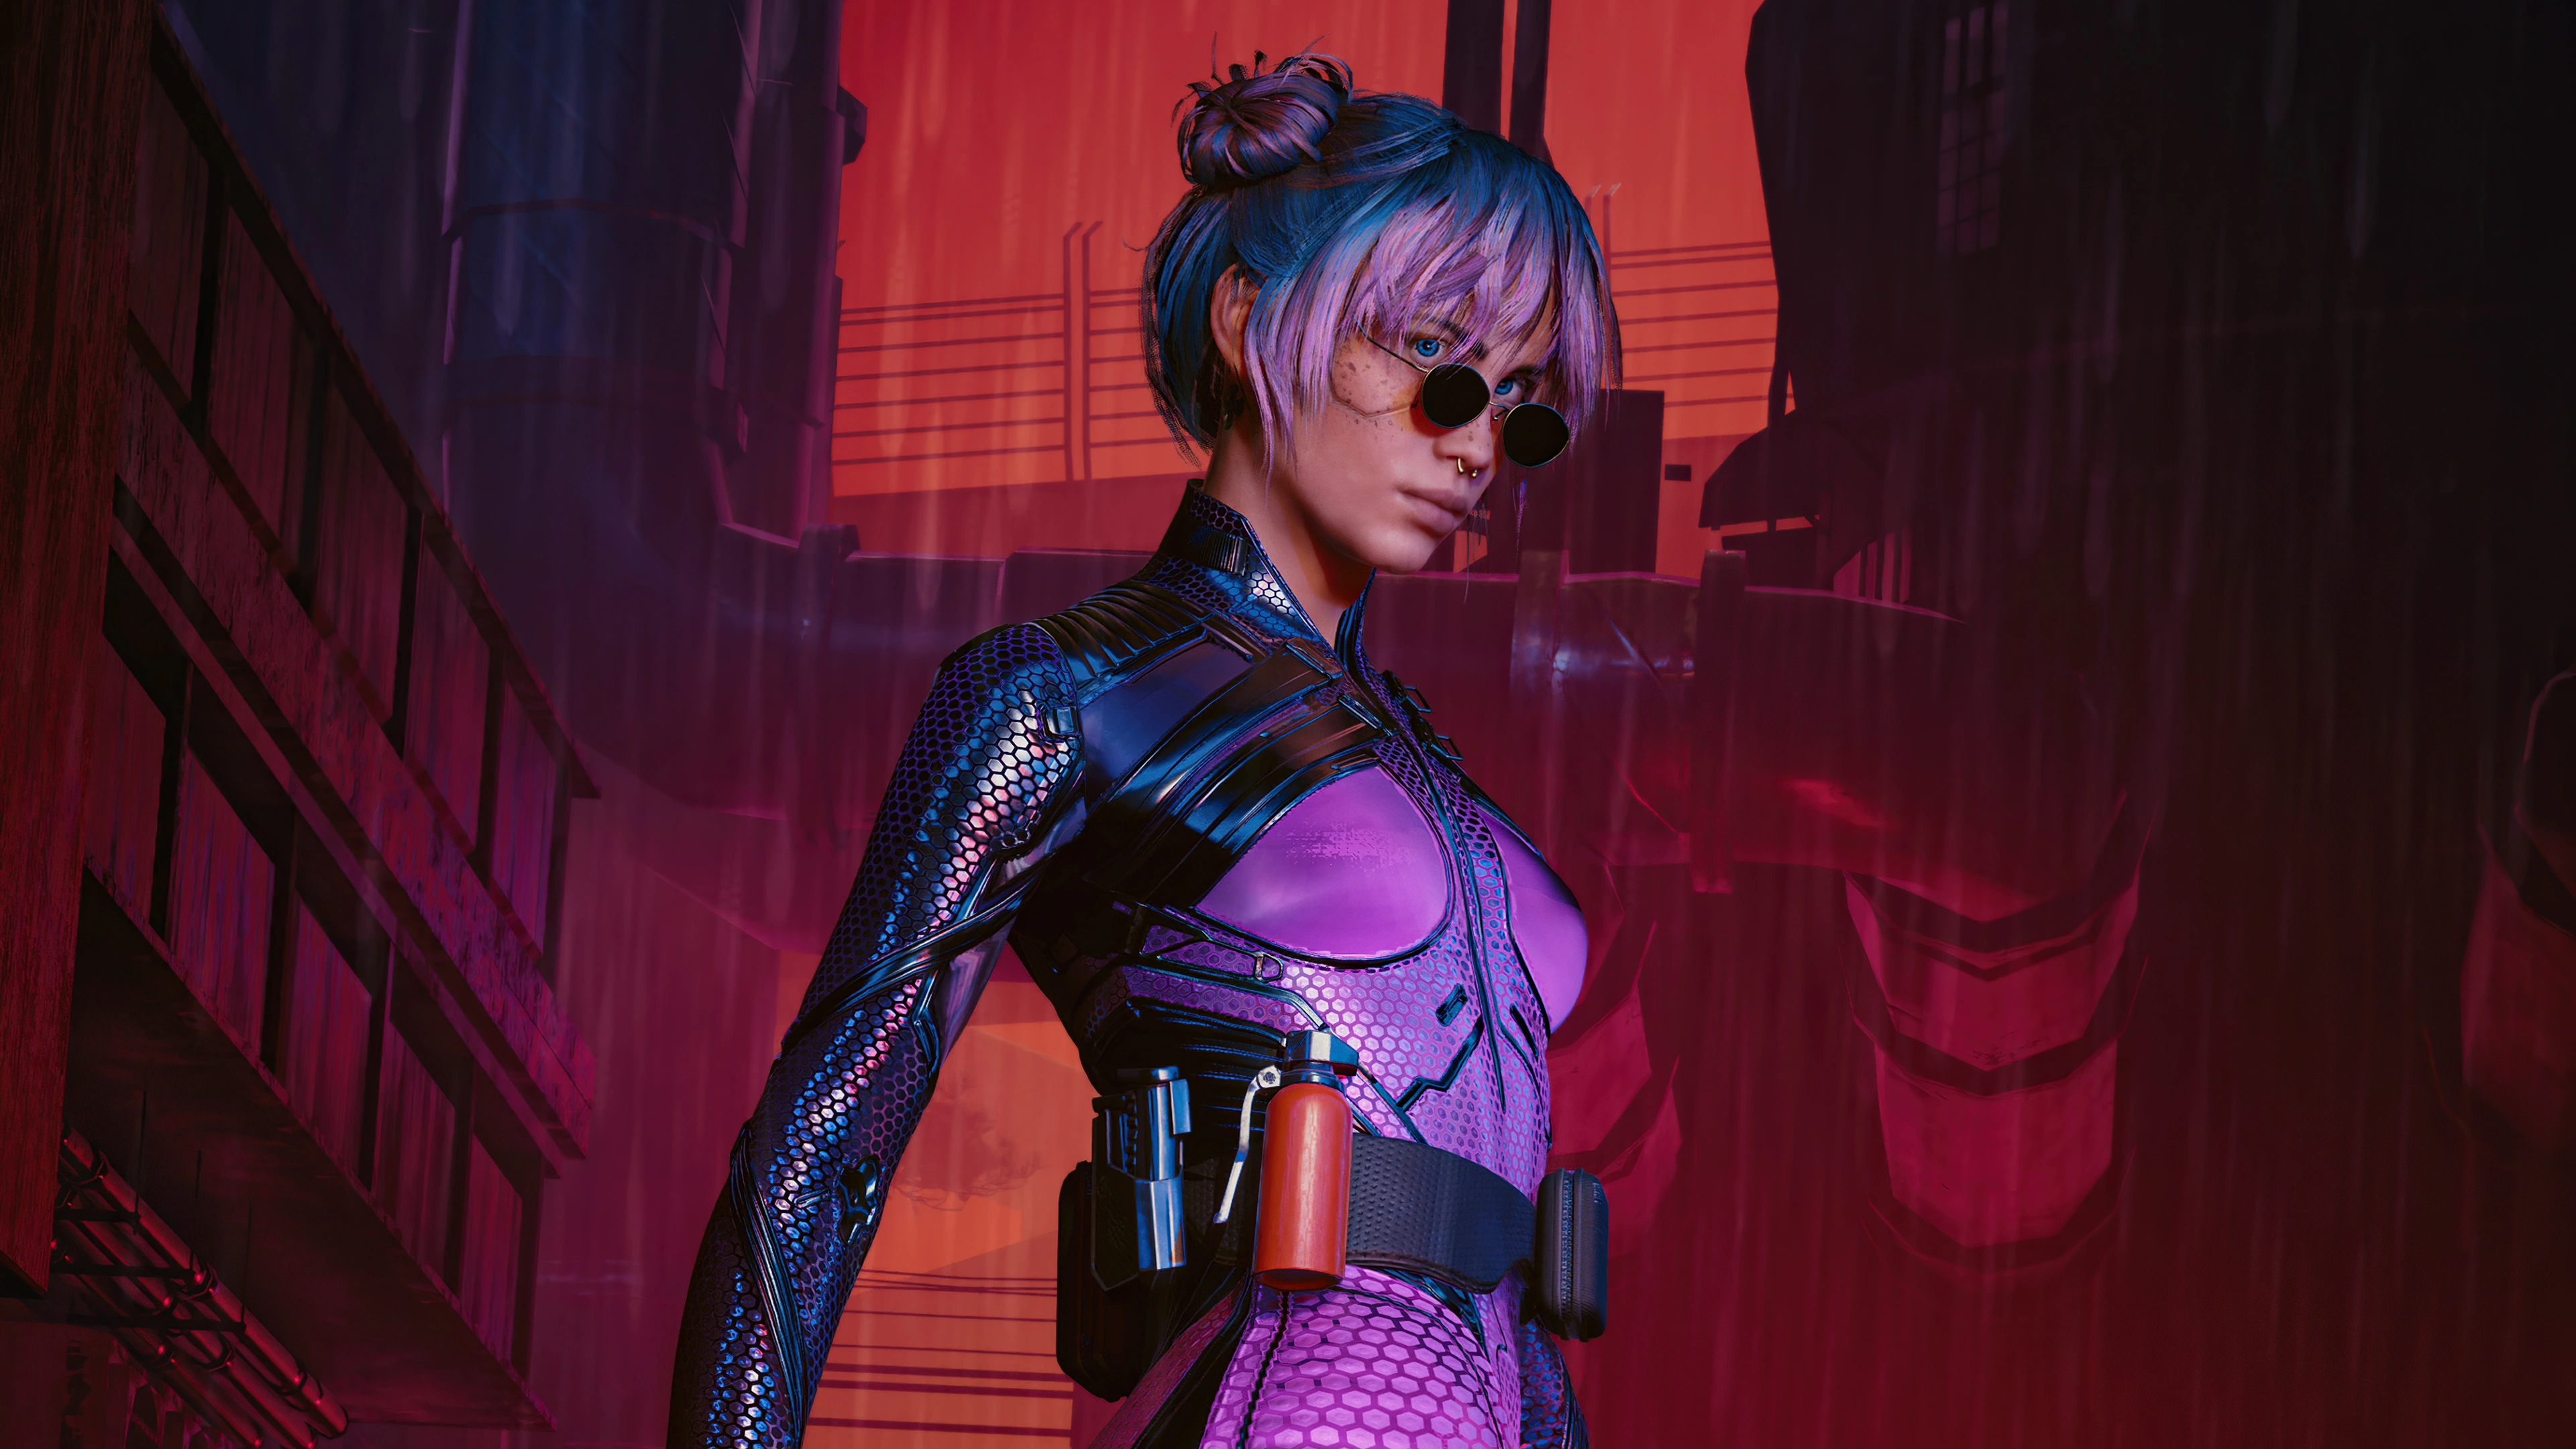 cyberpunk 2077 city girl with sword 4k qj.jpg